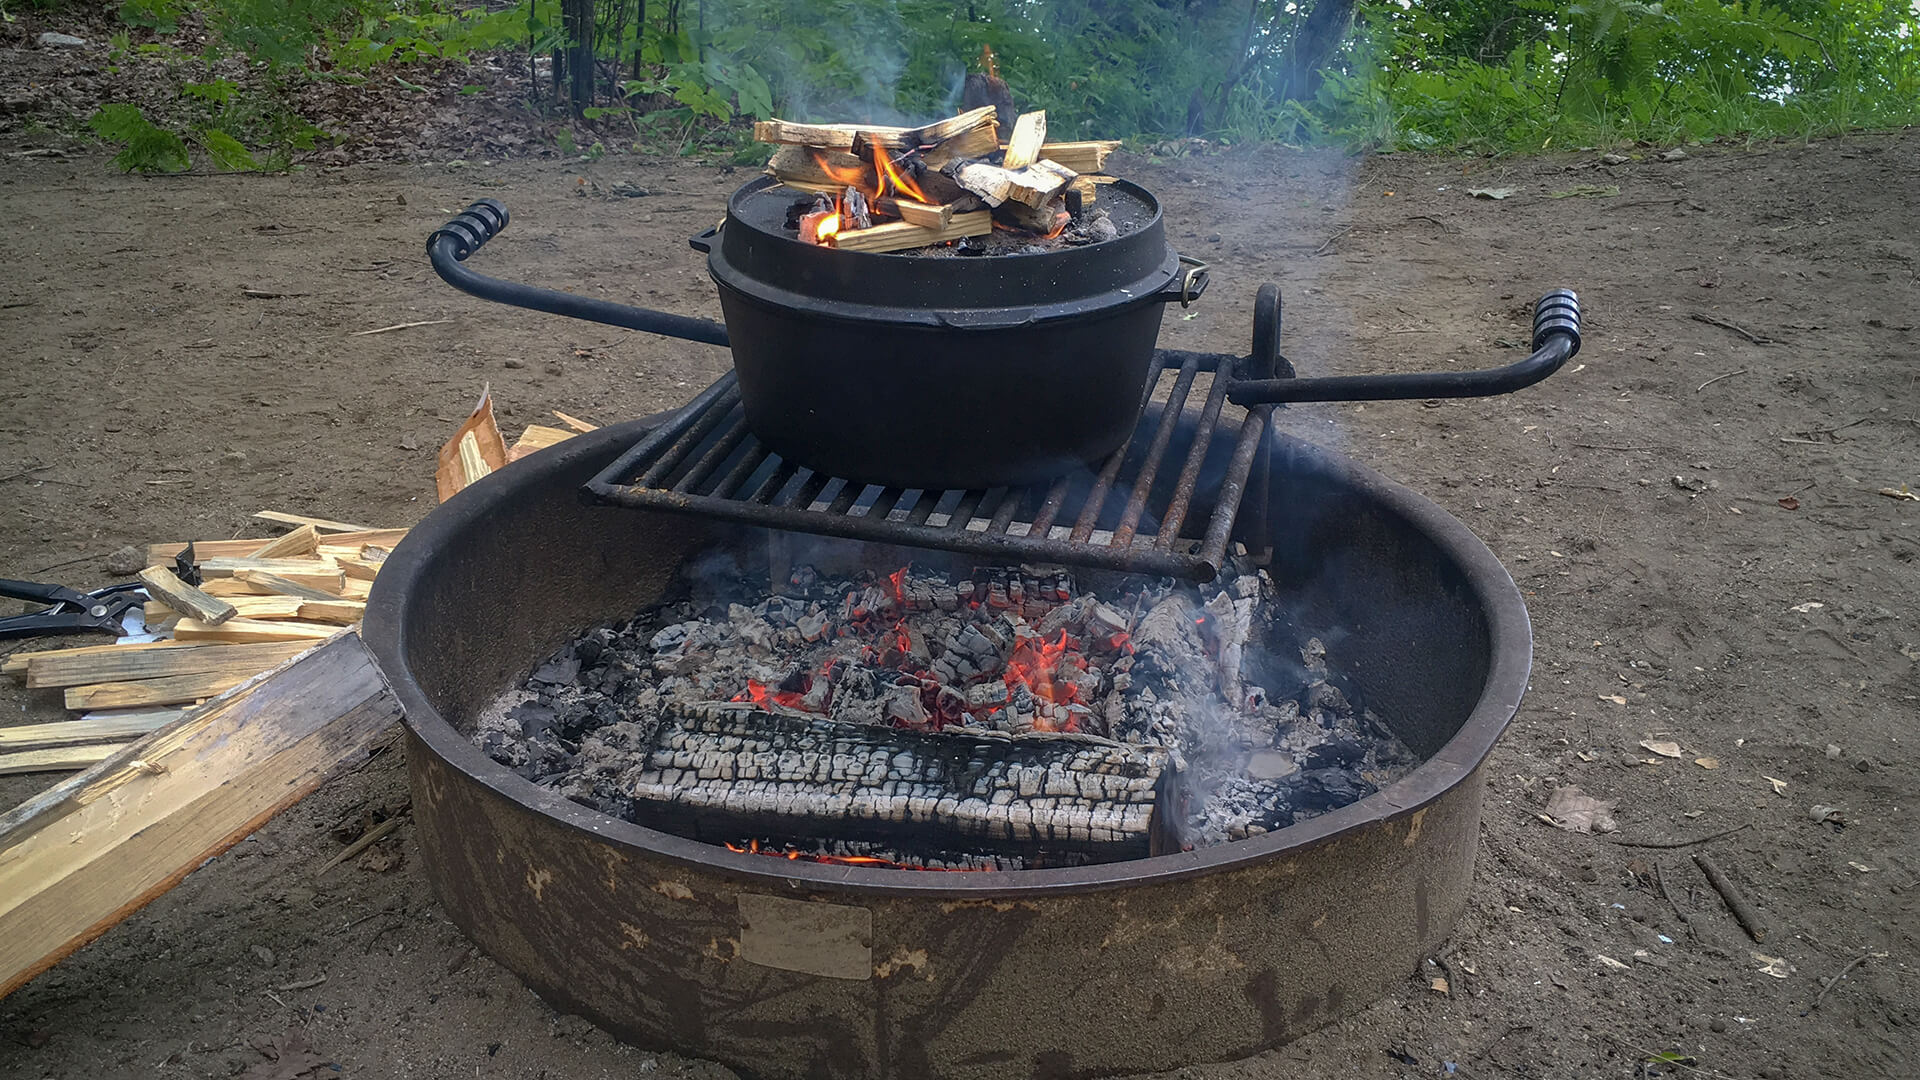 https://cdn2.hubspot.net/hubfs/366142/dutch-oven-camping-recipes.jpg